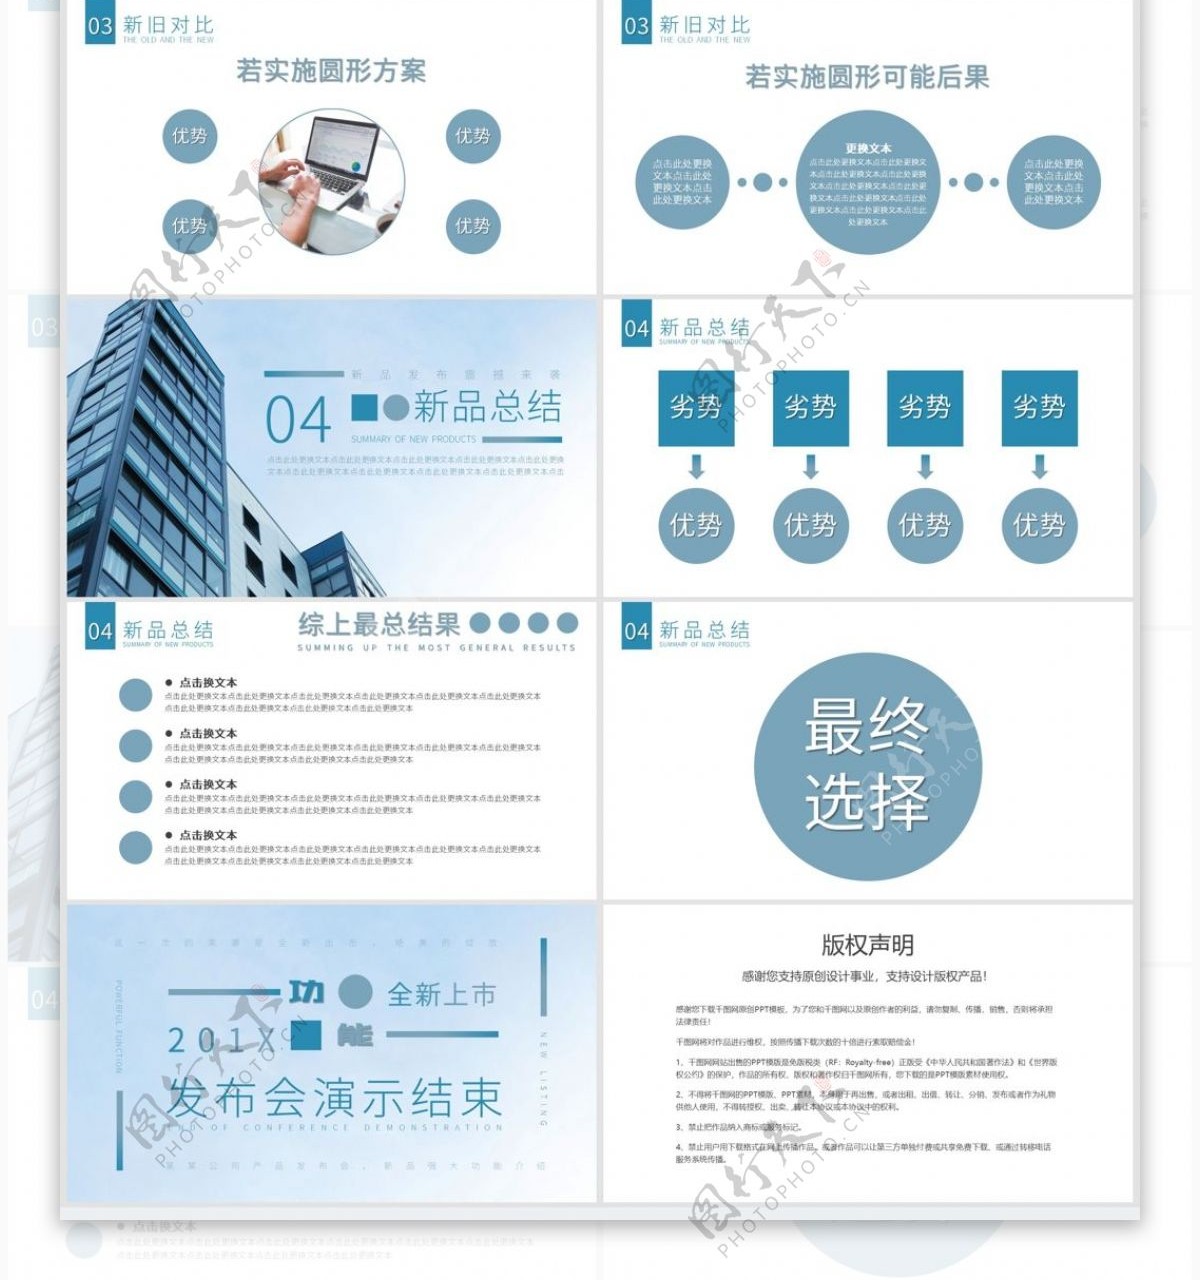 蓝色系企业新产品发布PPT模板